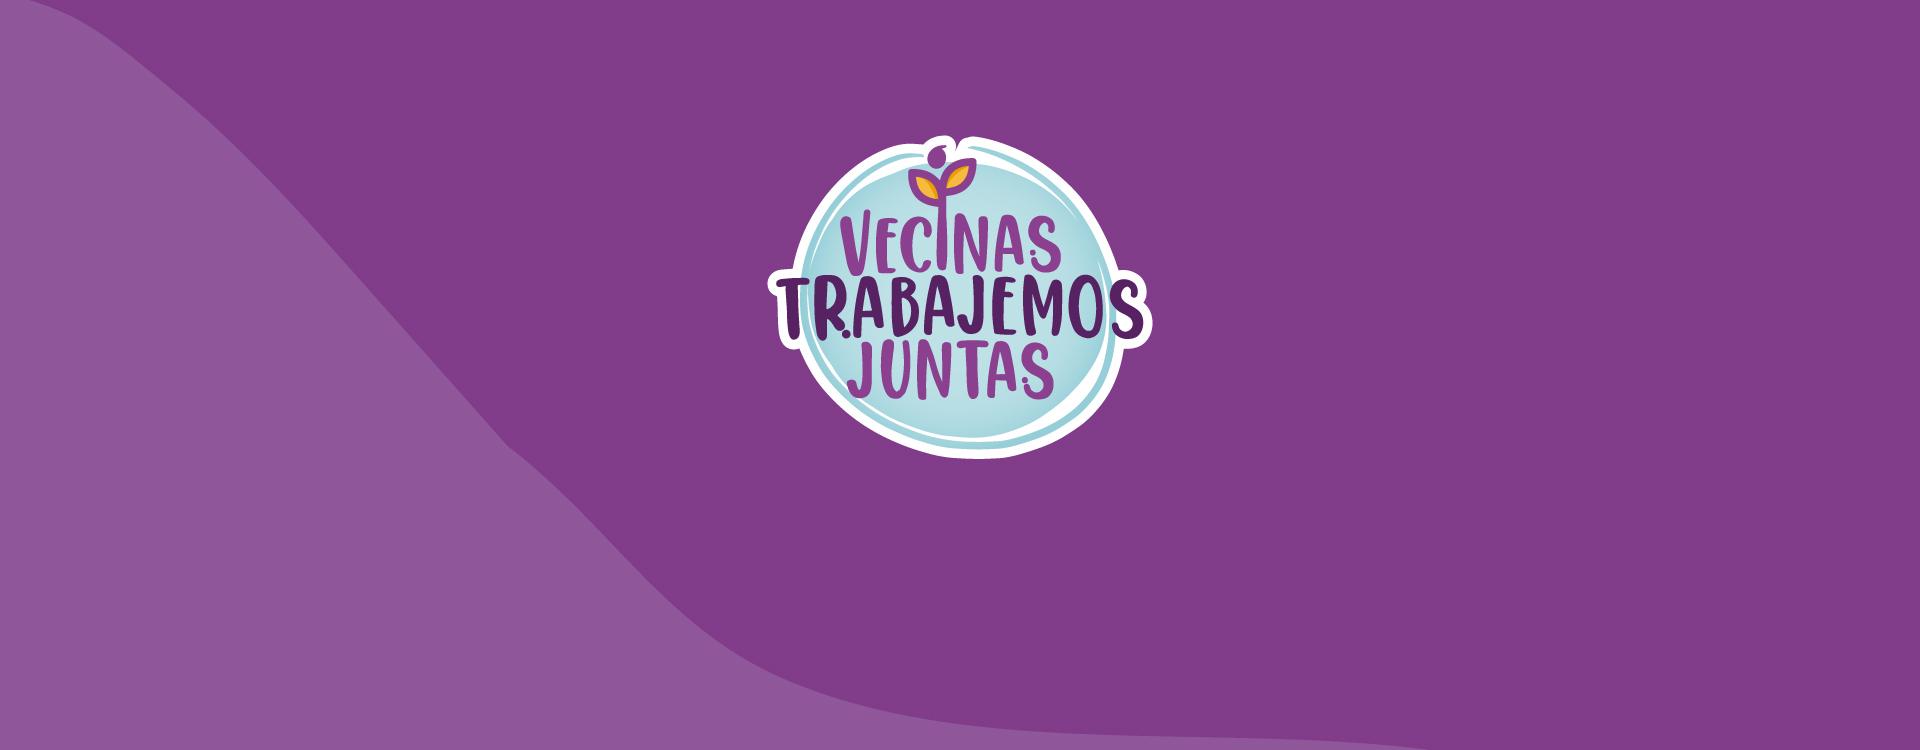 Logo de estrategia VECINAS TRABAJEMOS JUNTAS